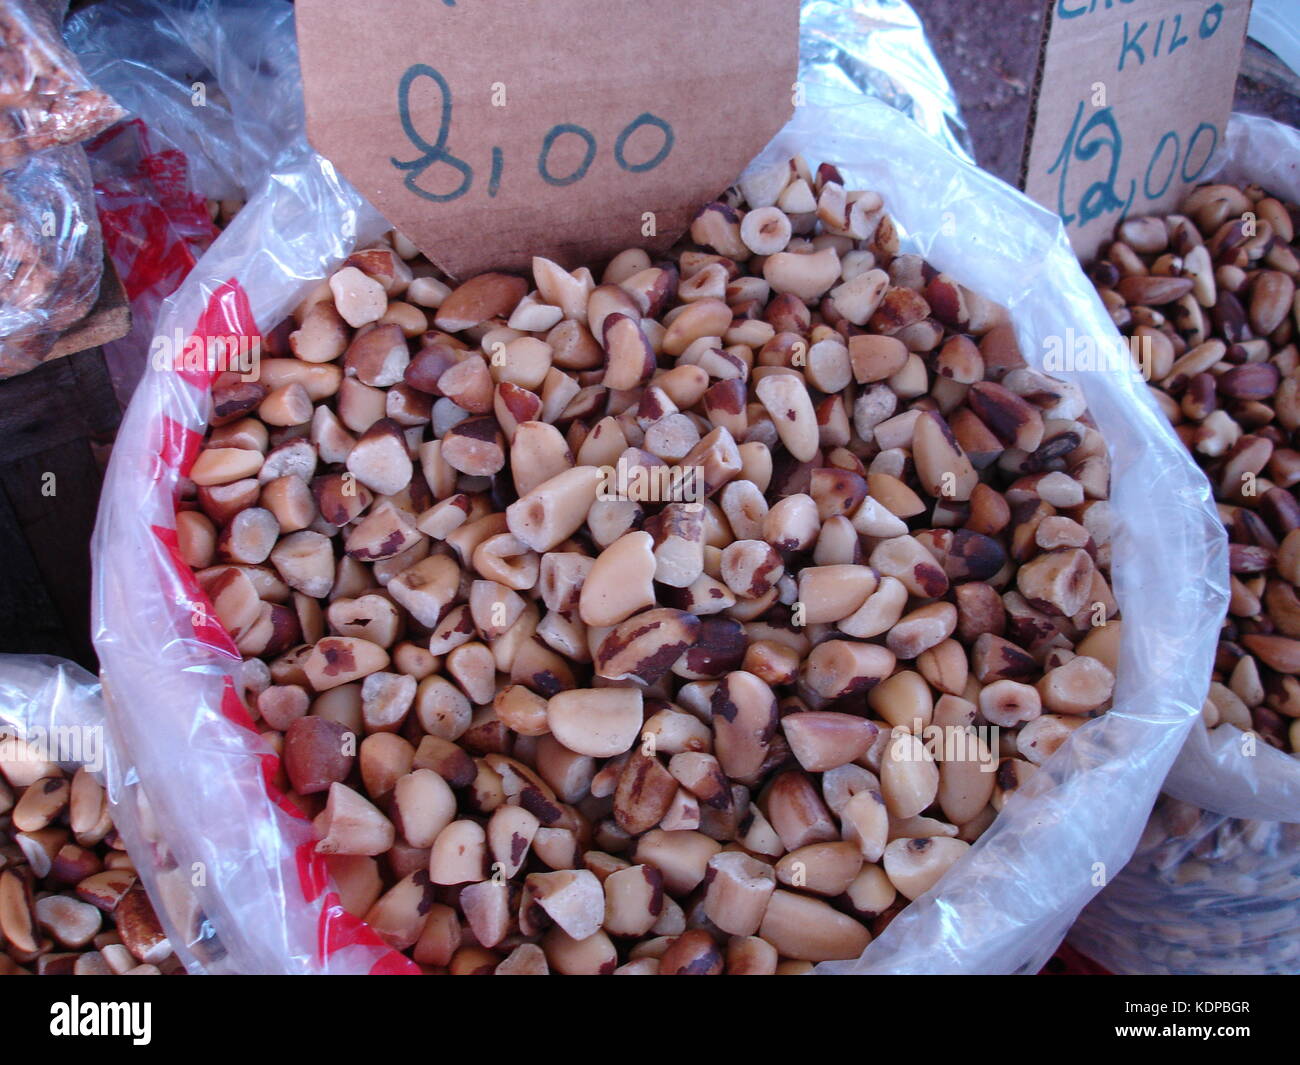 https://c8.alamy.com/comp/KDPBGR/large-bag-of-brazil-nuts-on-ssle-at-ver-o-peso-market-in-belem-brazil-KDPBGR.jpg